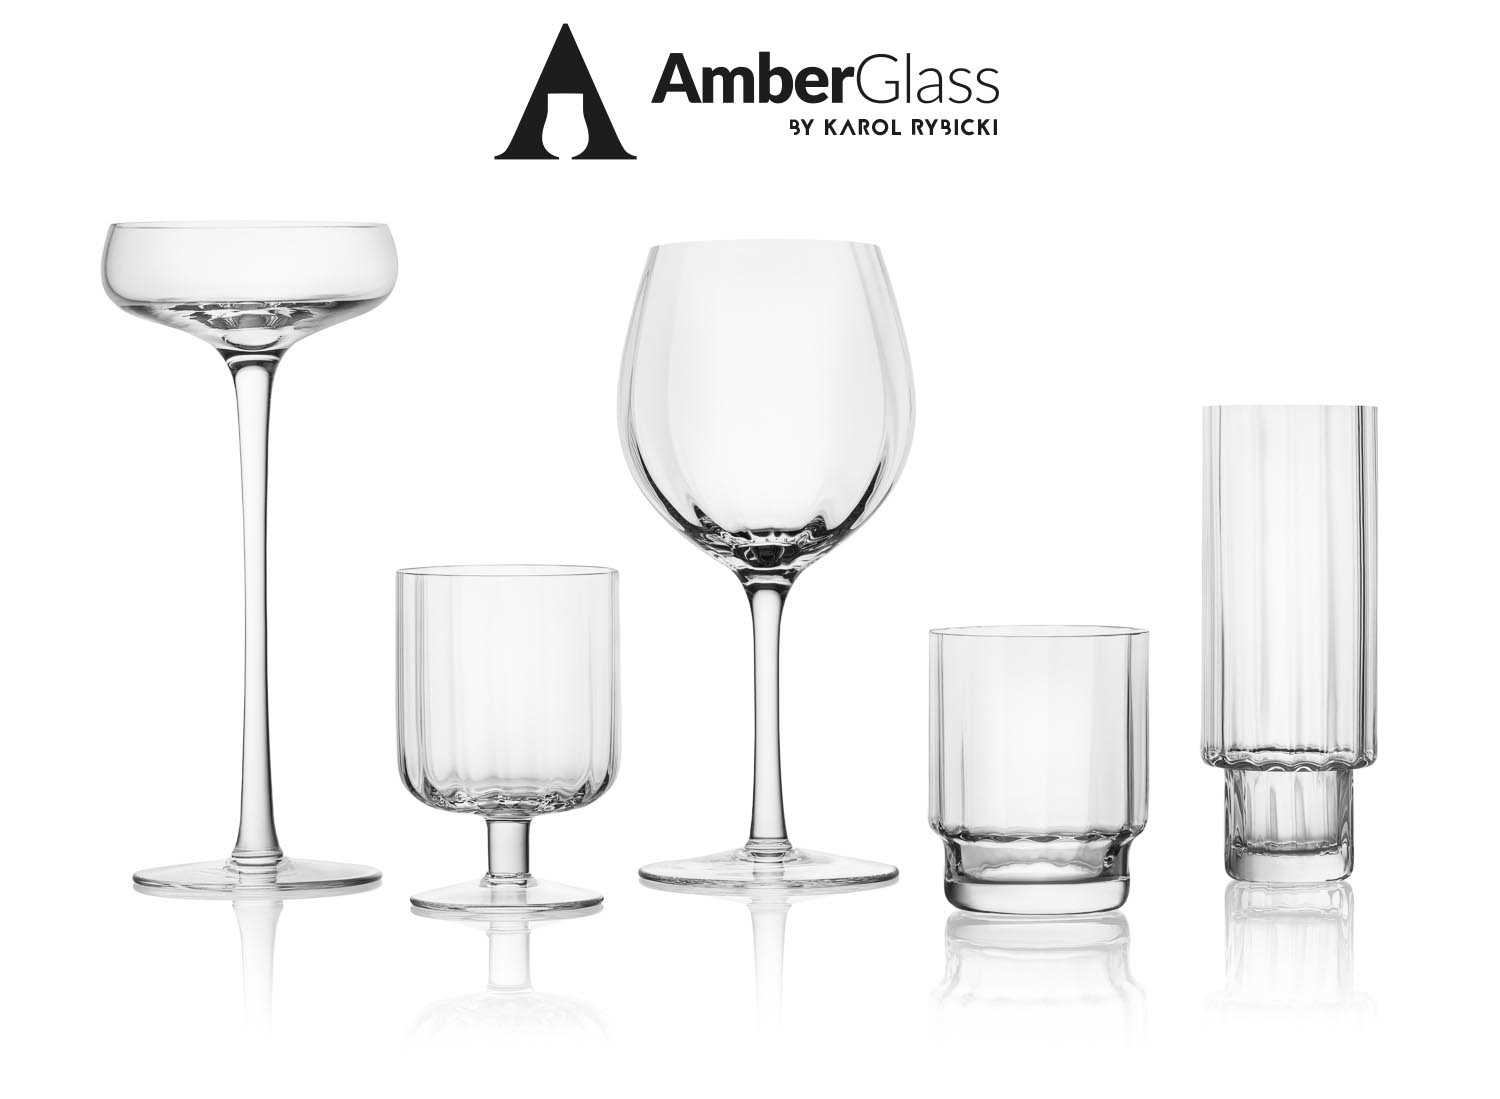 Amber Glass by Karol Rybicki